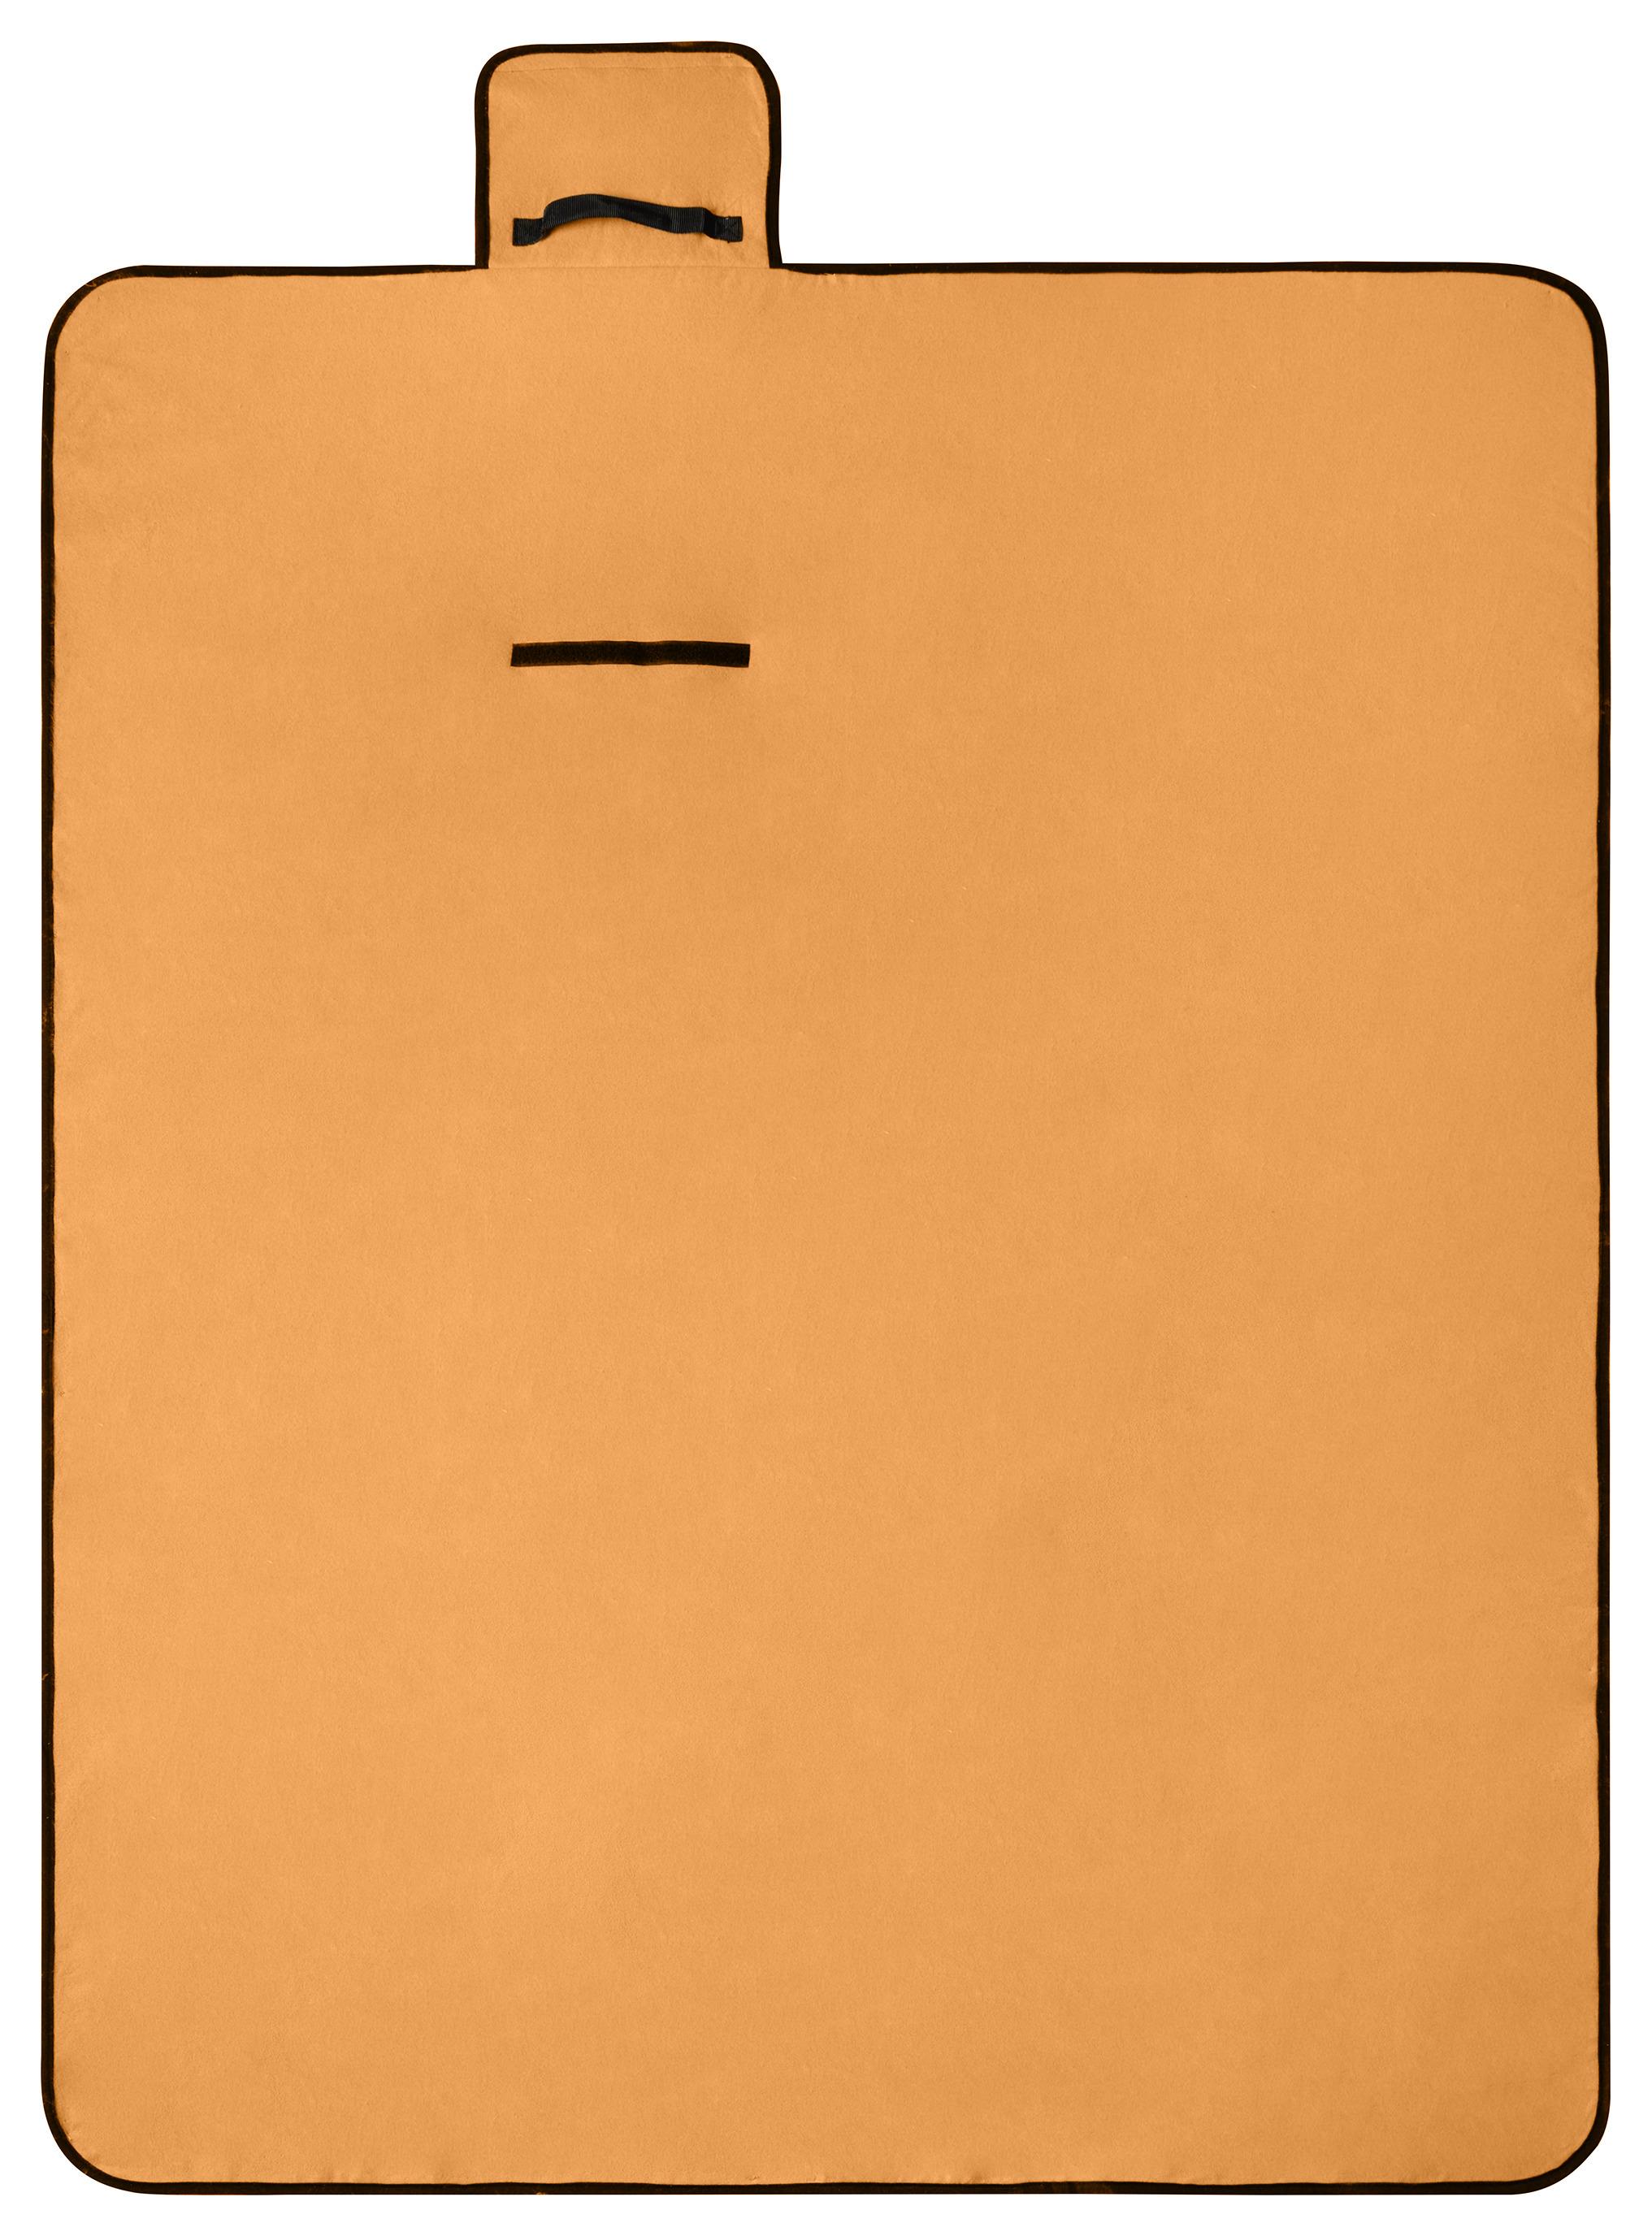 Pikniktakaró Sunny - Narancs, konvencionális, Textil (130/170cm) - Modern Living